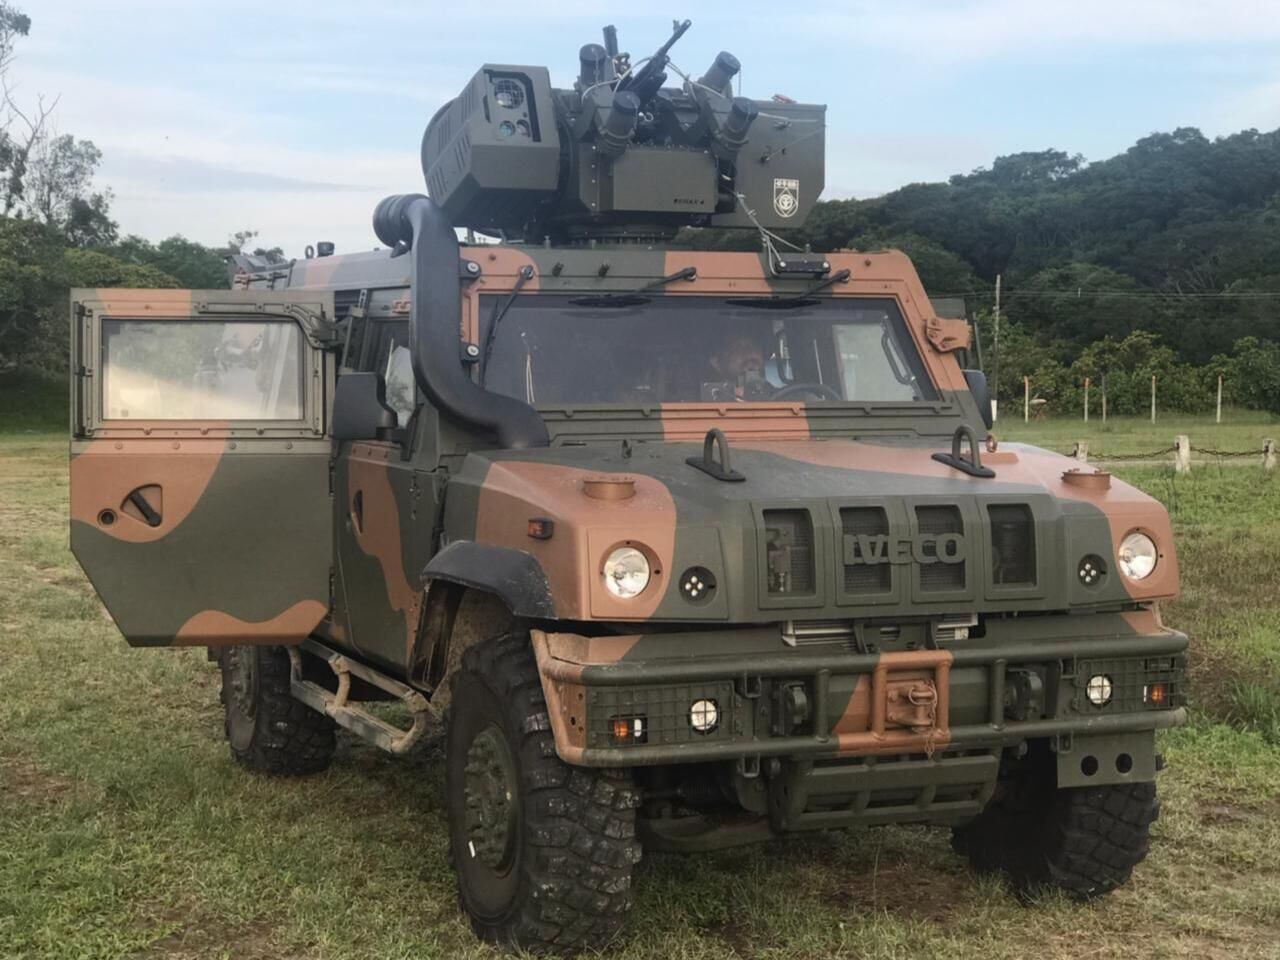 Exército Brasileiro se prepara para posicionar blindados na fronteira